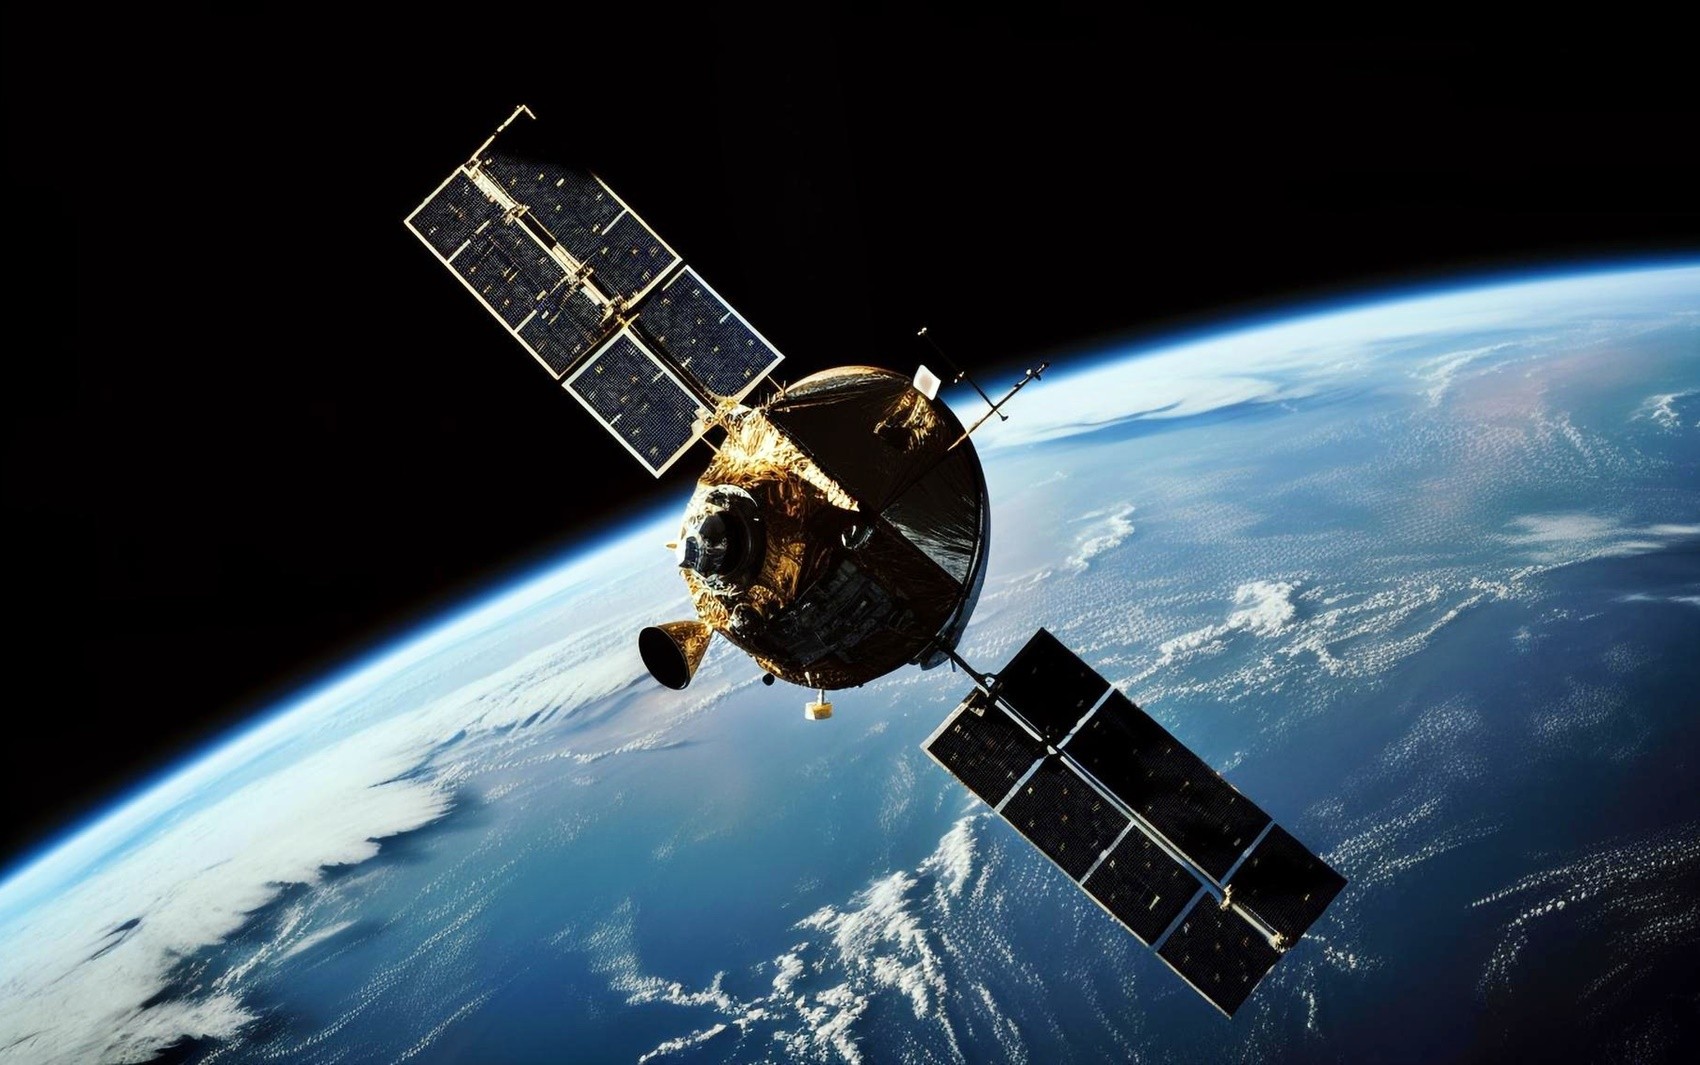 Lançamento de satélites na órbita terrestre acontece no Inatel em MG; saiba como vai funcionar